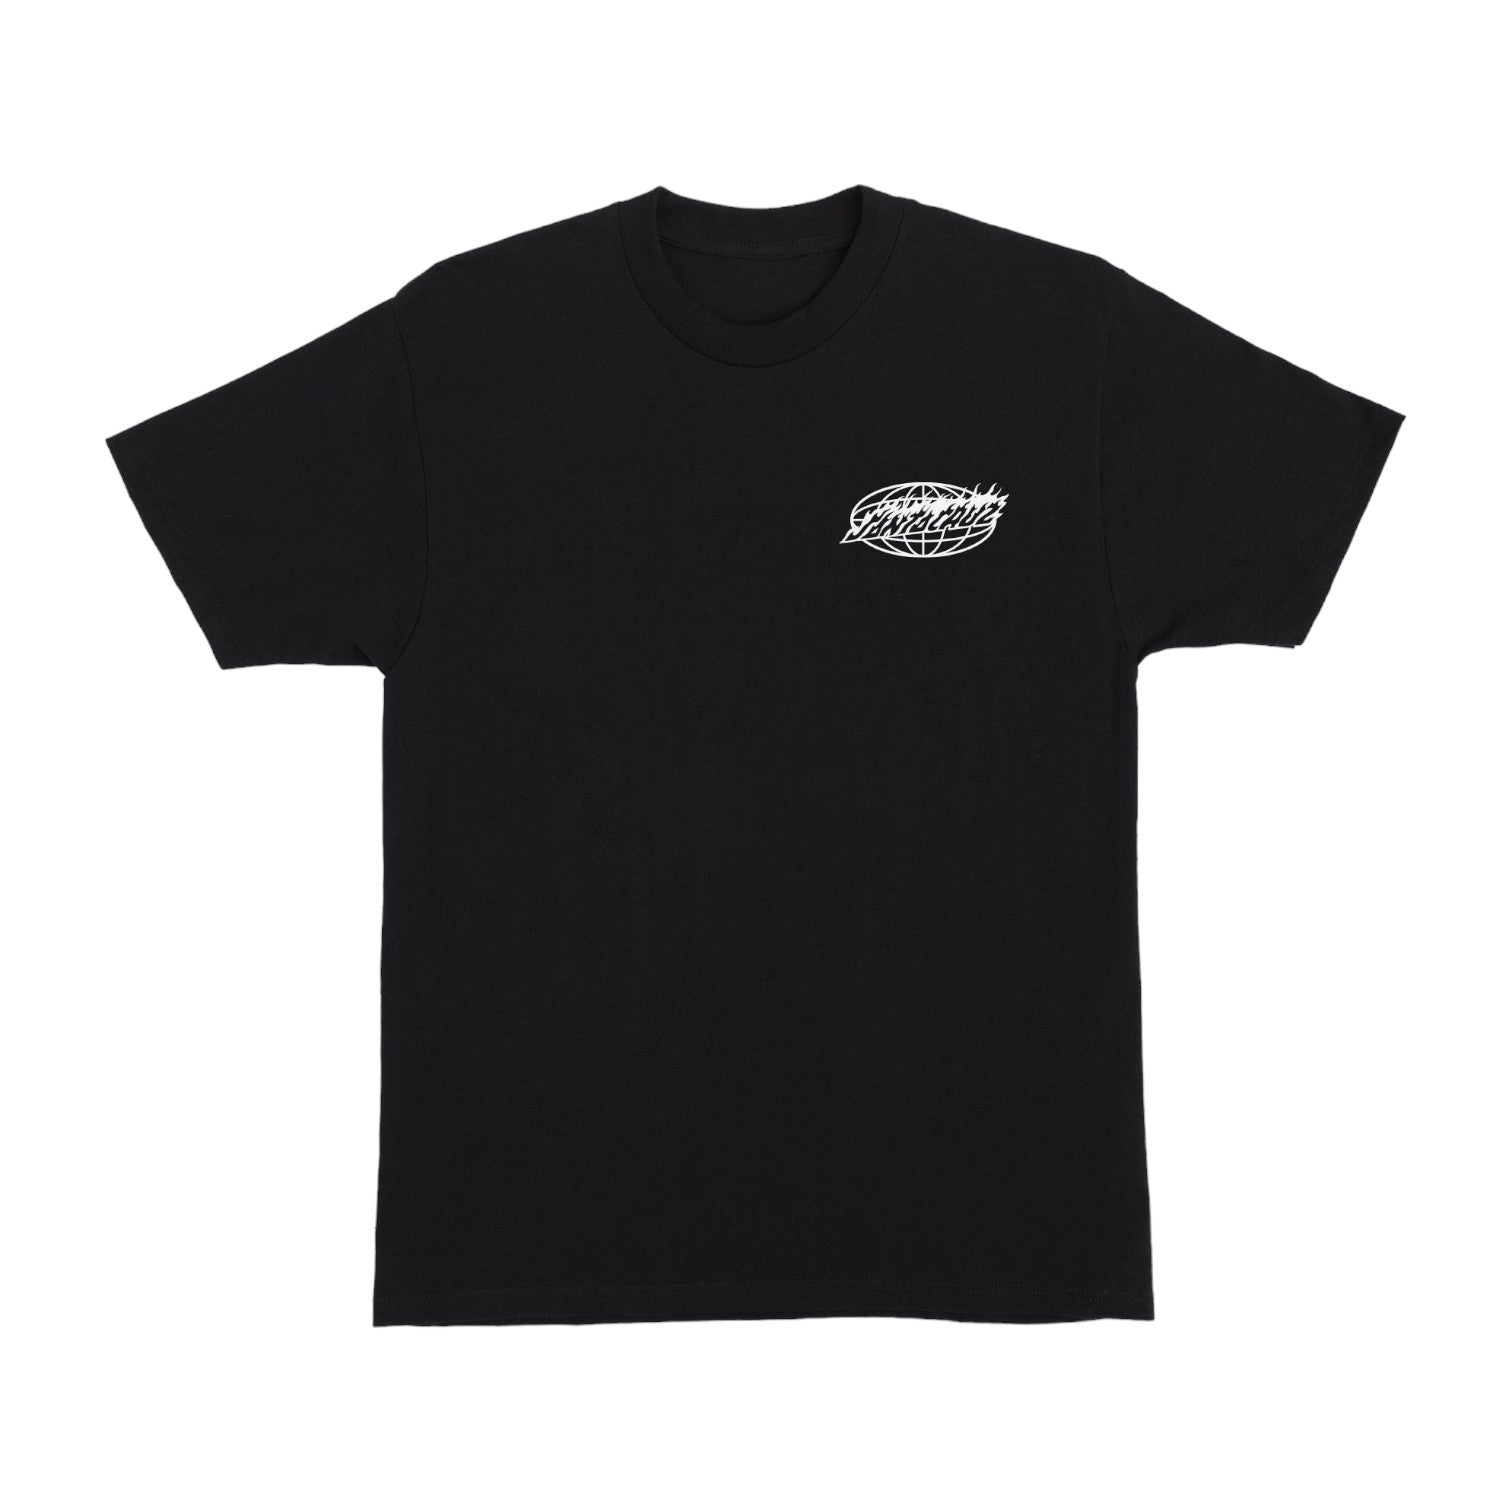 Santa Cruz Global Flame Dot Mono T-Shirt - Black